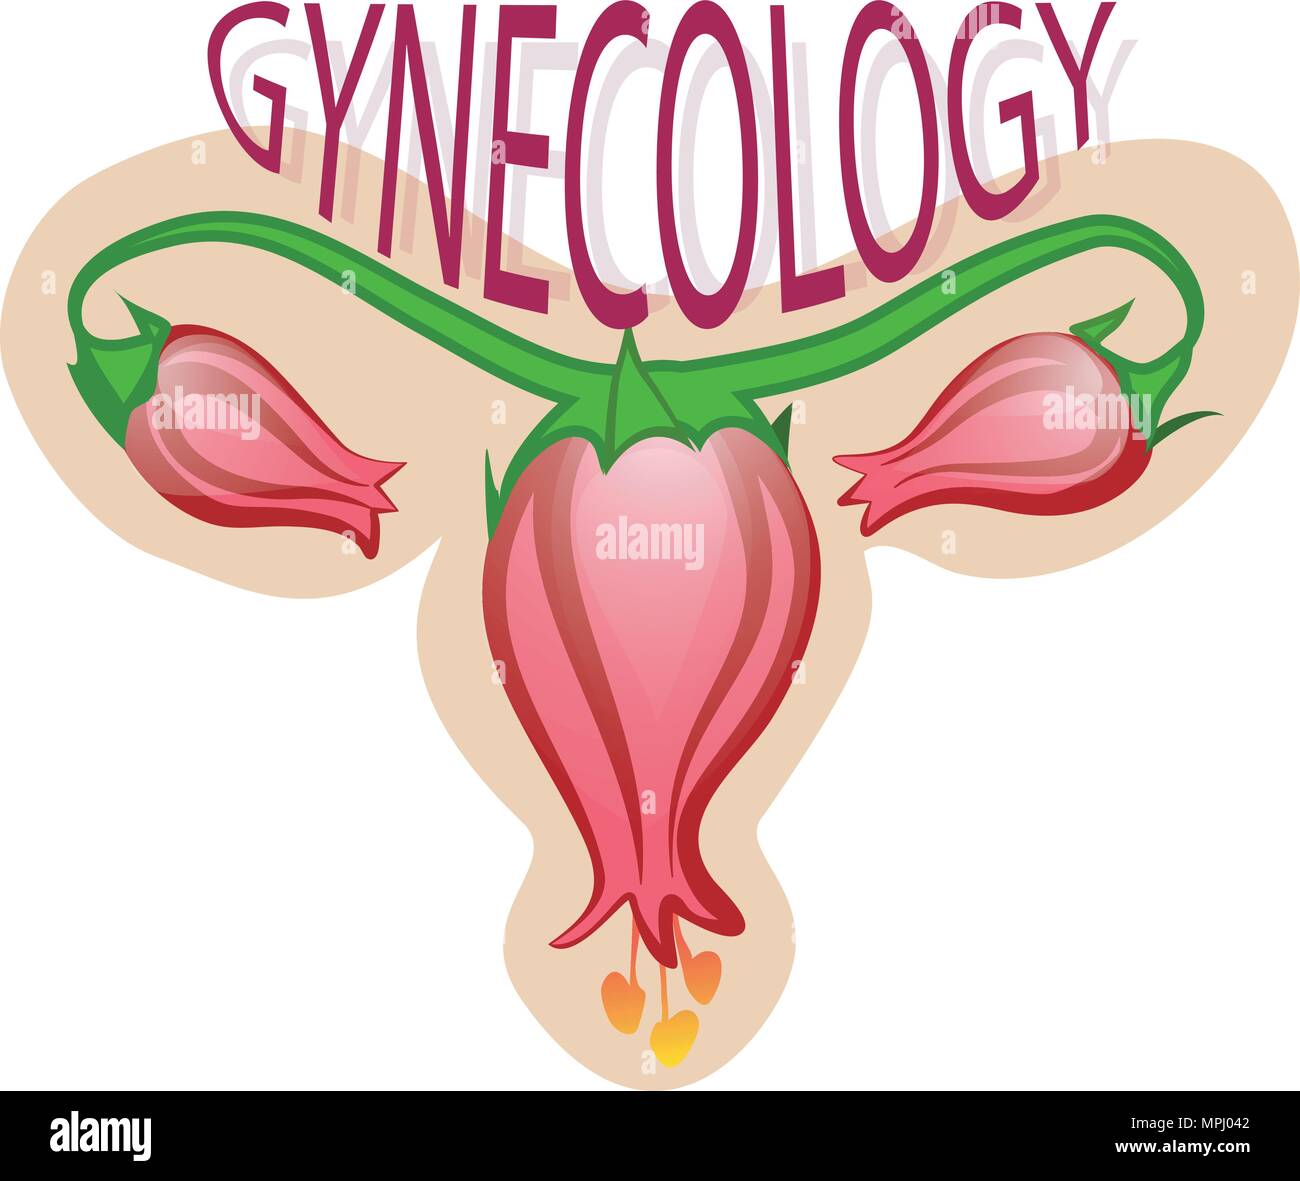 Illustration du logo de gynécologie, fleurs, symbole des ovaires. Illustration de Vecteur